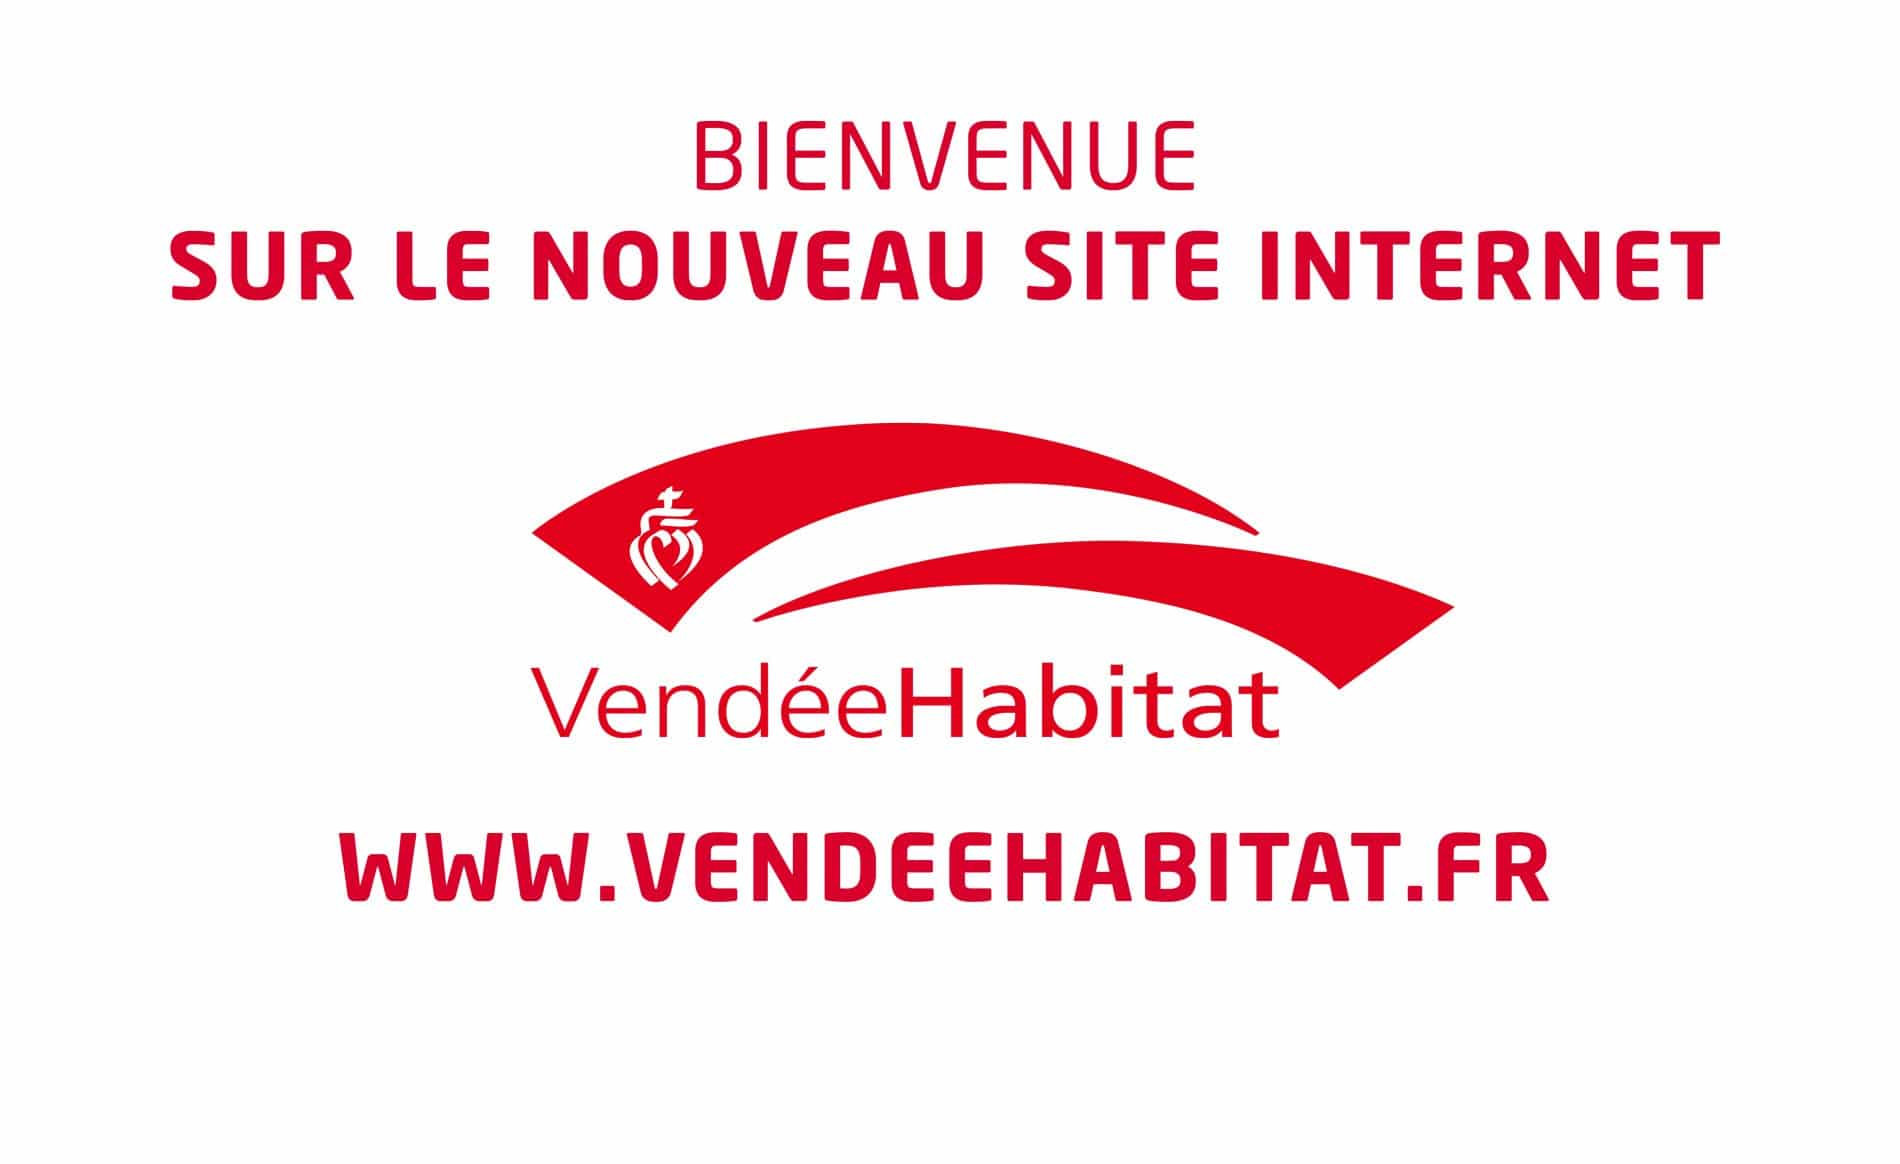 Bienvenue sur le nouveau site internet de Vendée Habitat